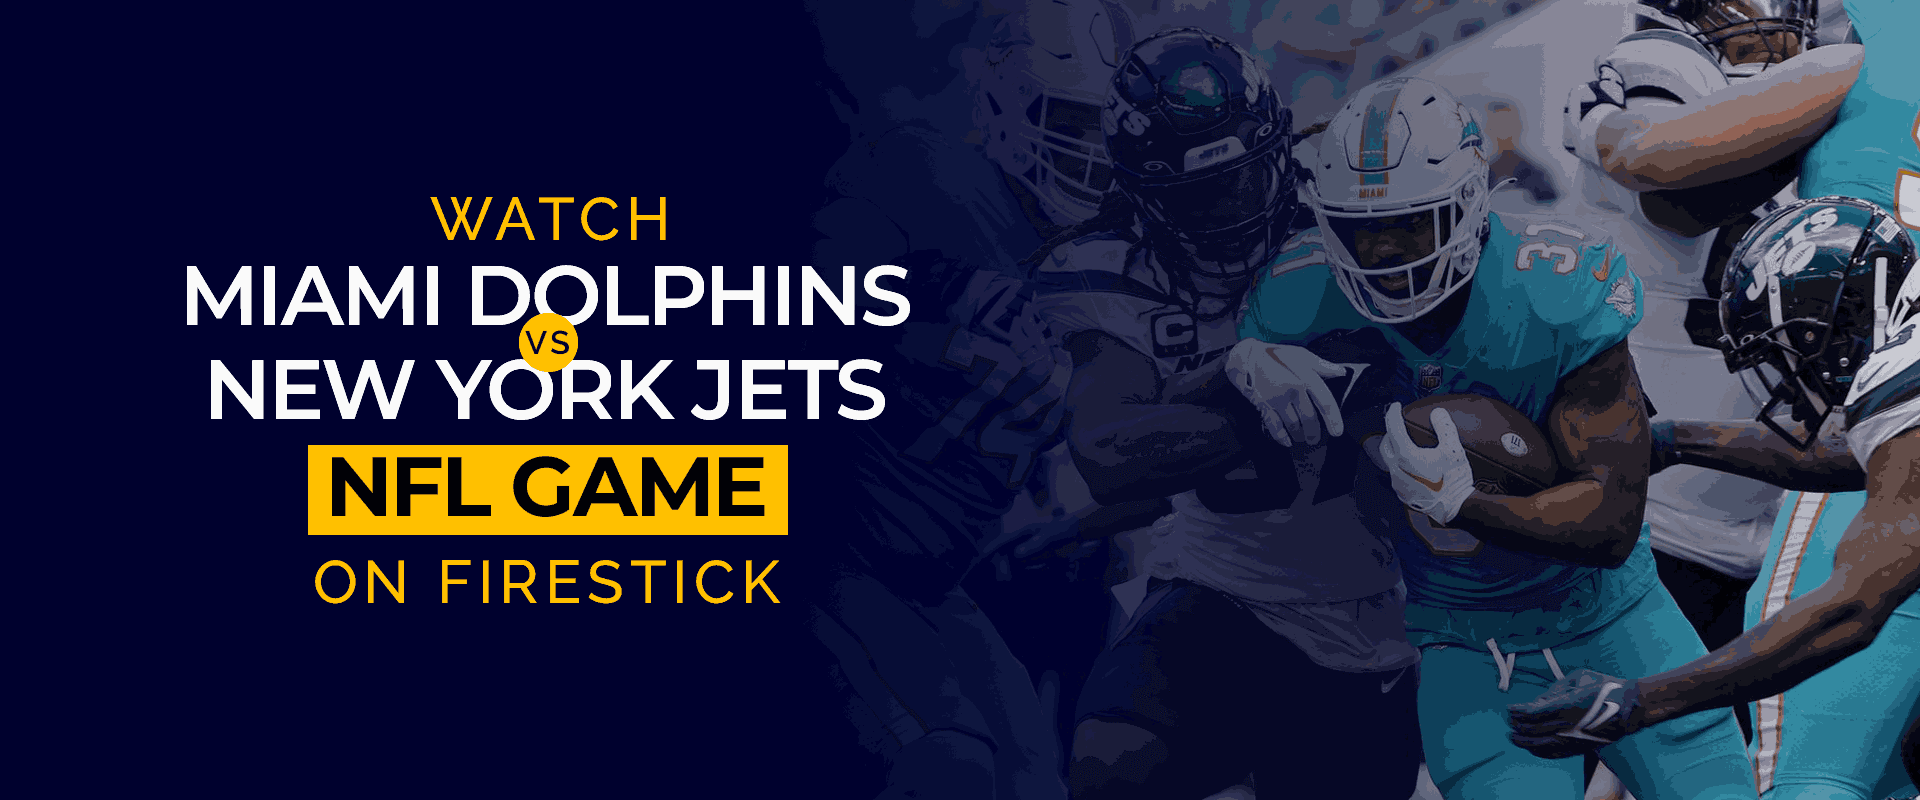 شاهد مباراة NFL Miami Dolphins vs New York Jets مباشرة على Firestick